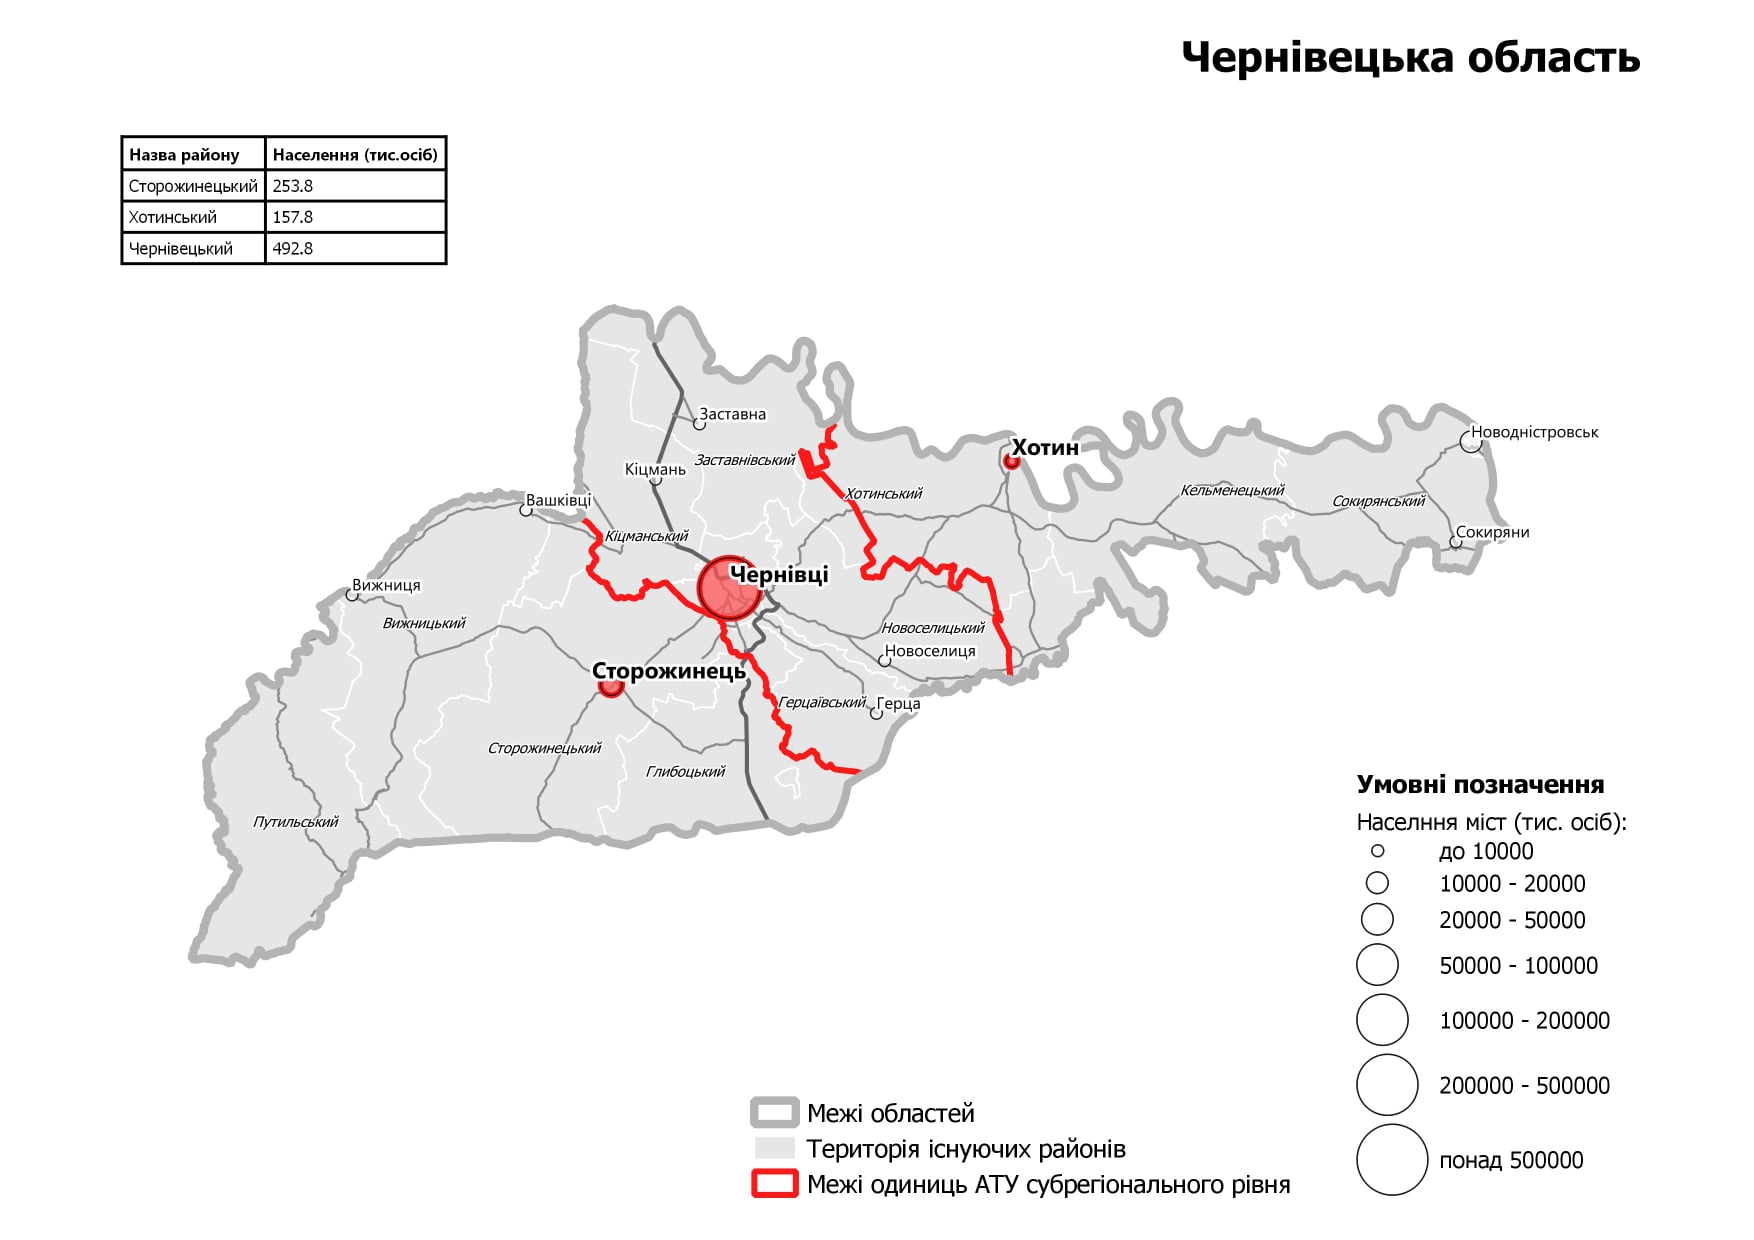 На Буковині хочуть використовувати назви районів не за центрами, а за географічними ознаками, щоб зняти напругу 